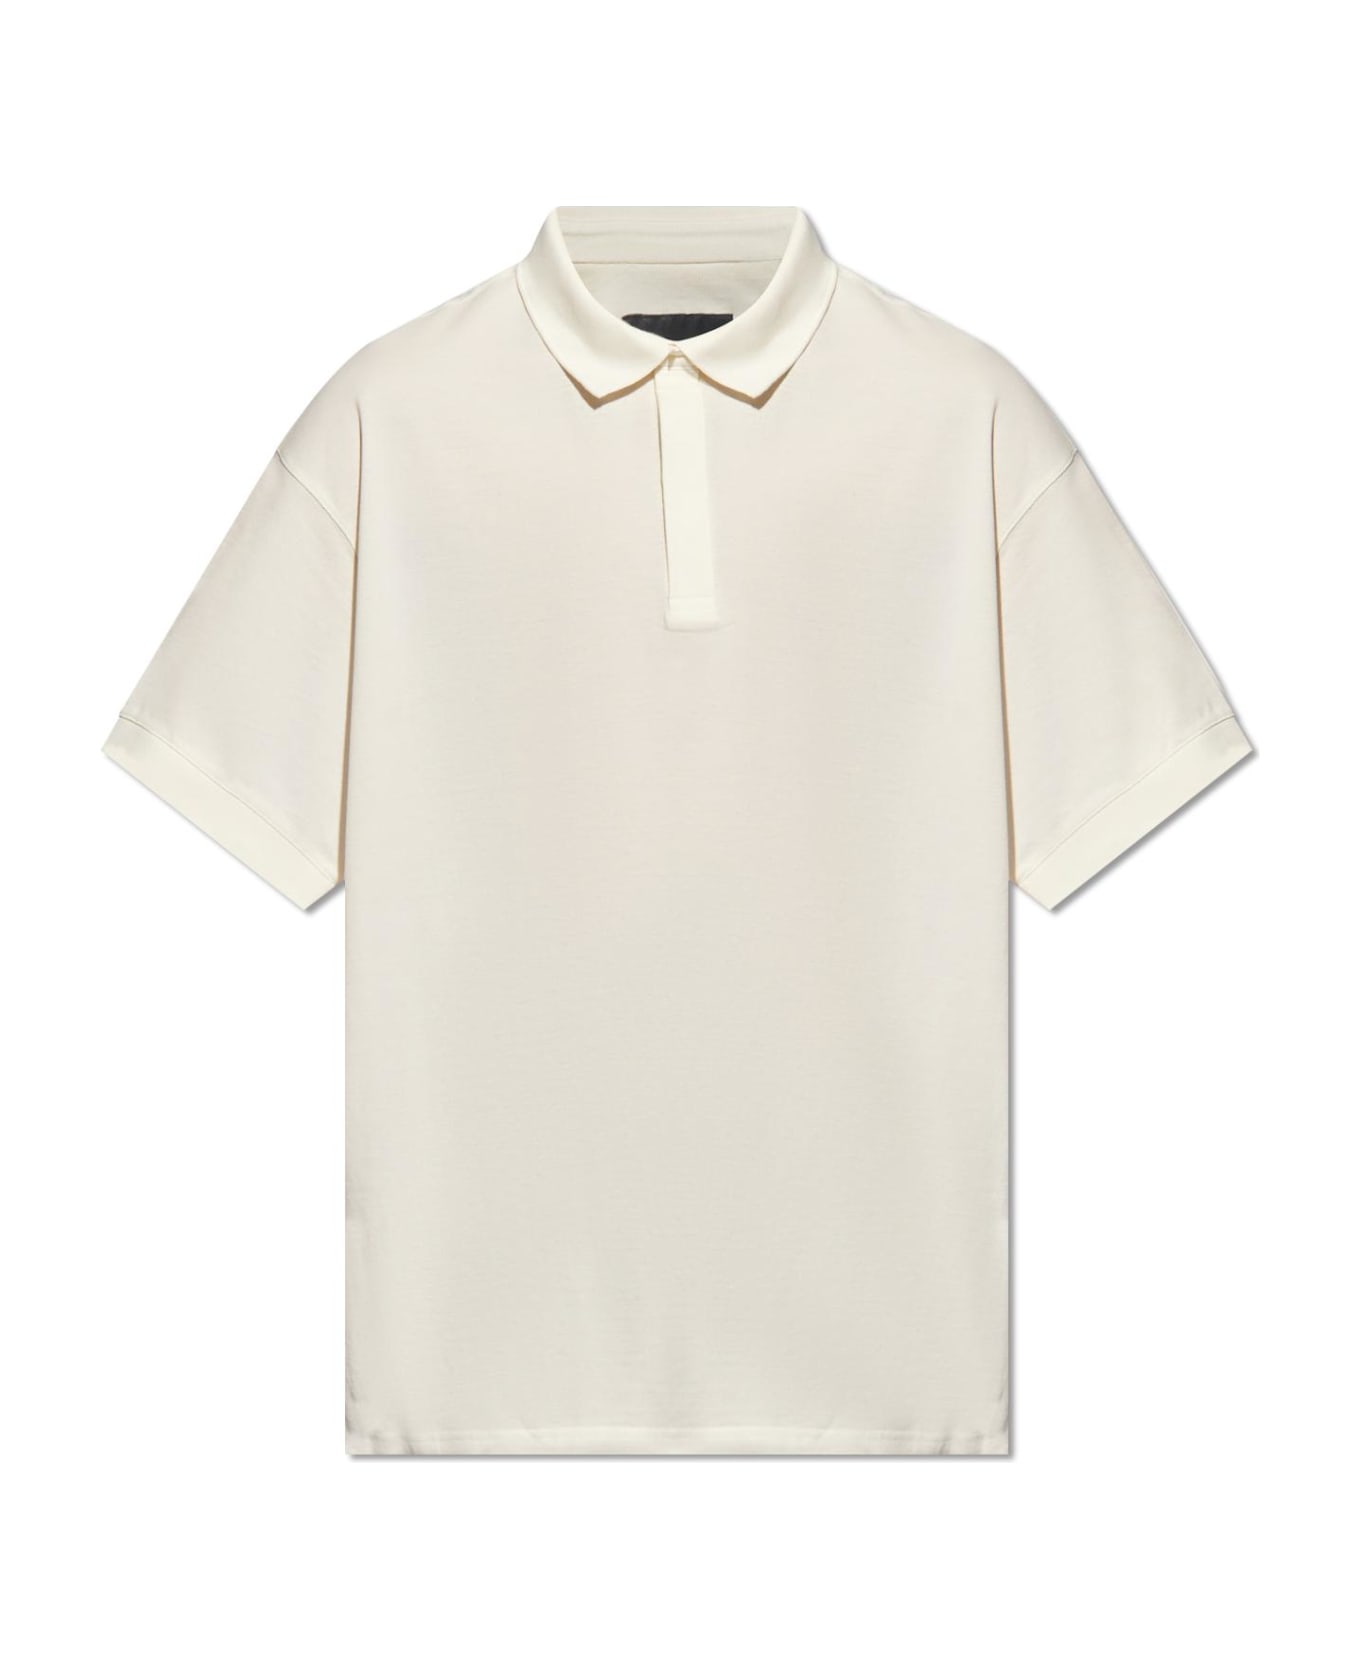 Y-3 Cotton Polo Shirt